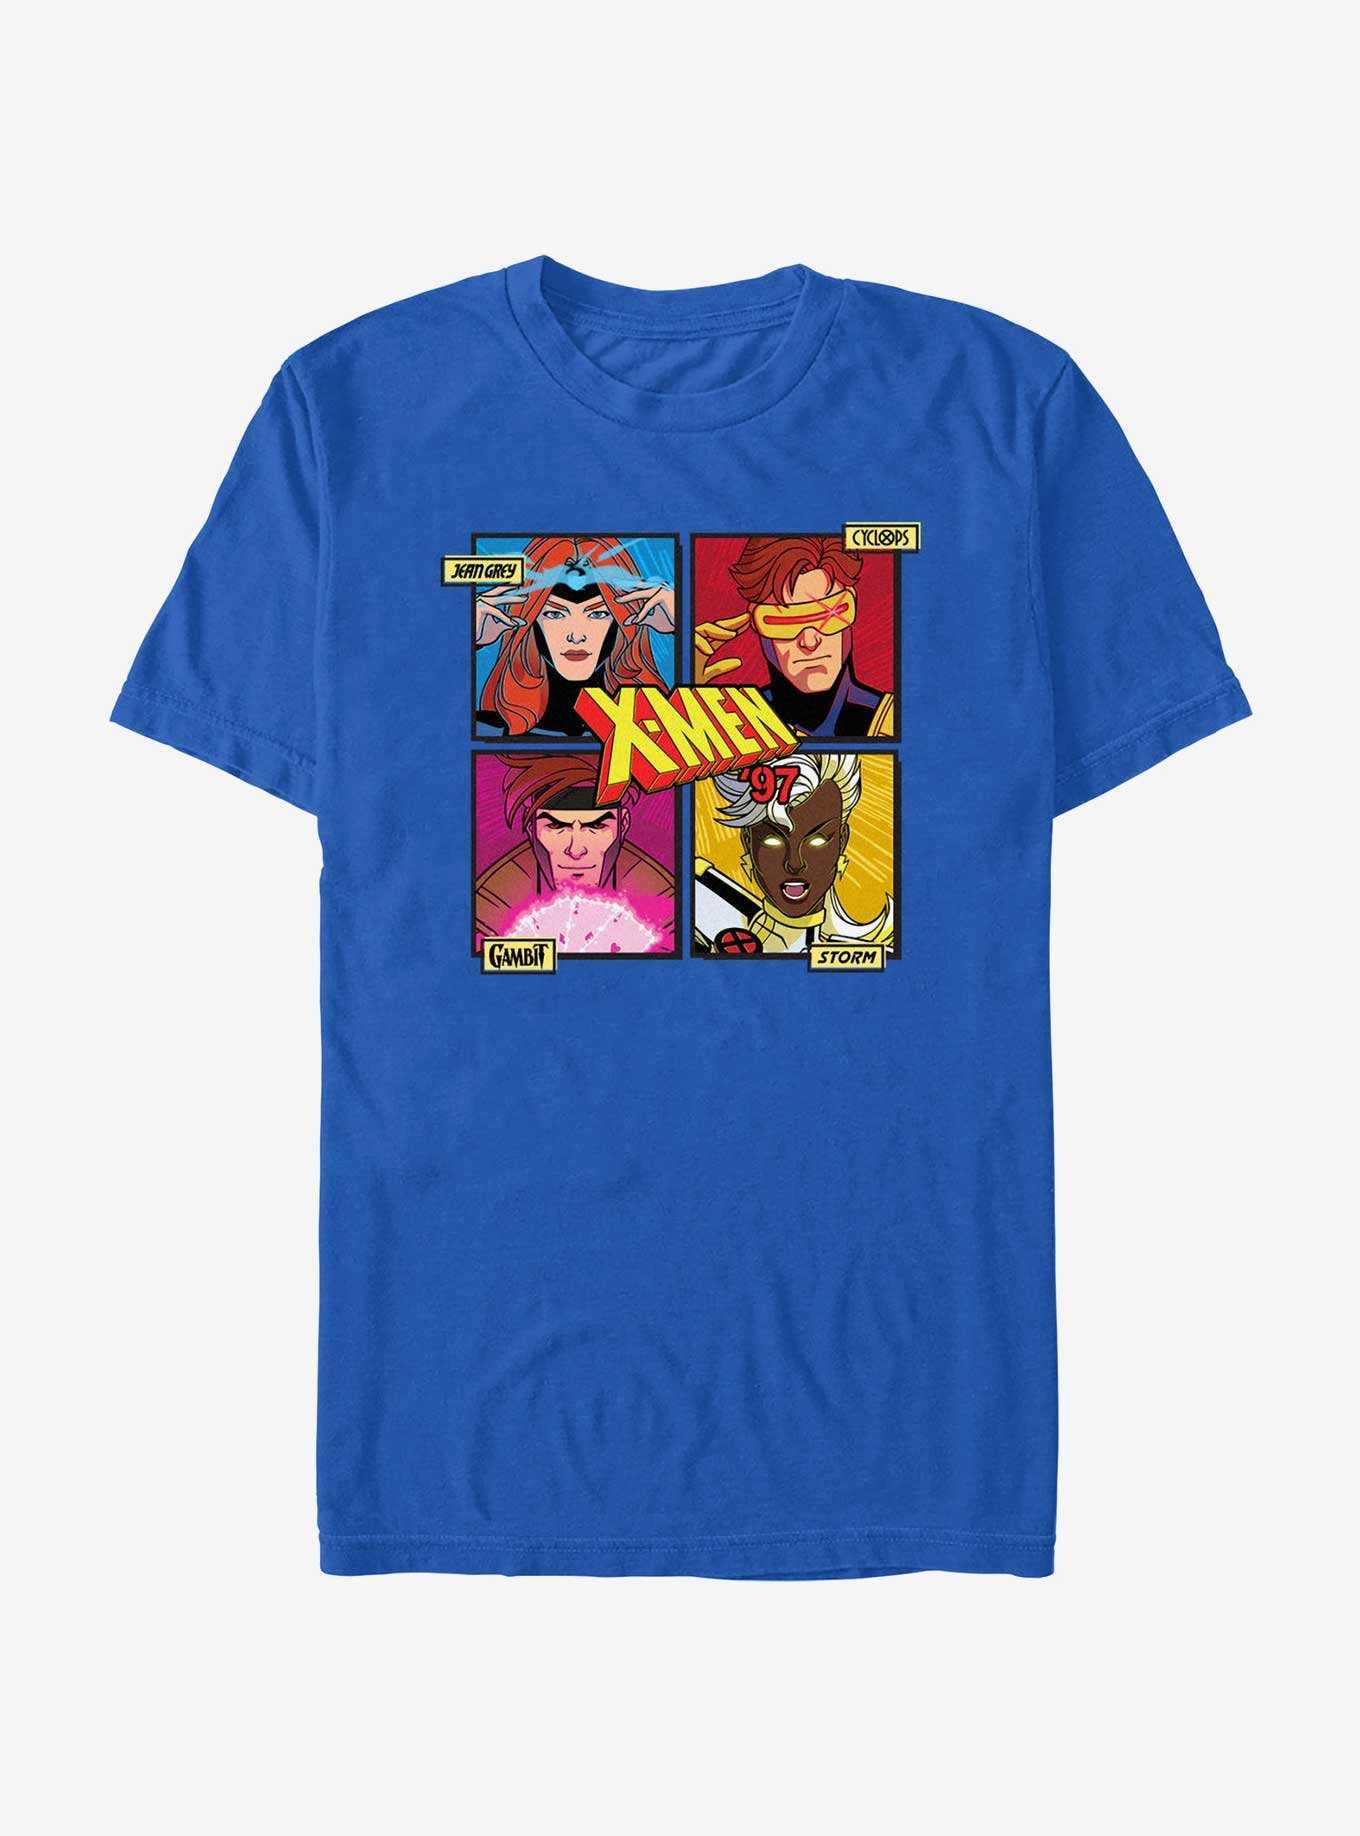 Marvel X-Men '97 Jean Cyclops Cambit Storm T-Shirt, , hi-res